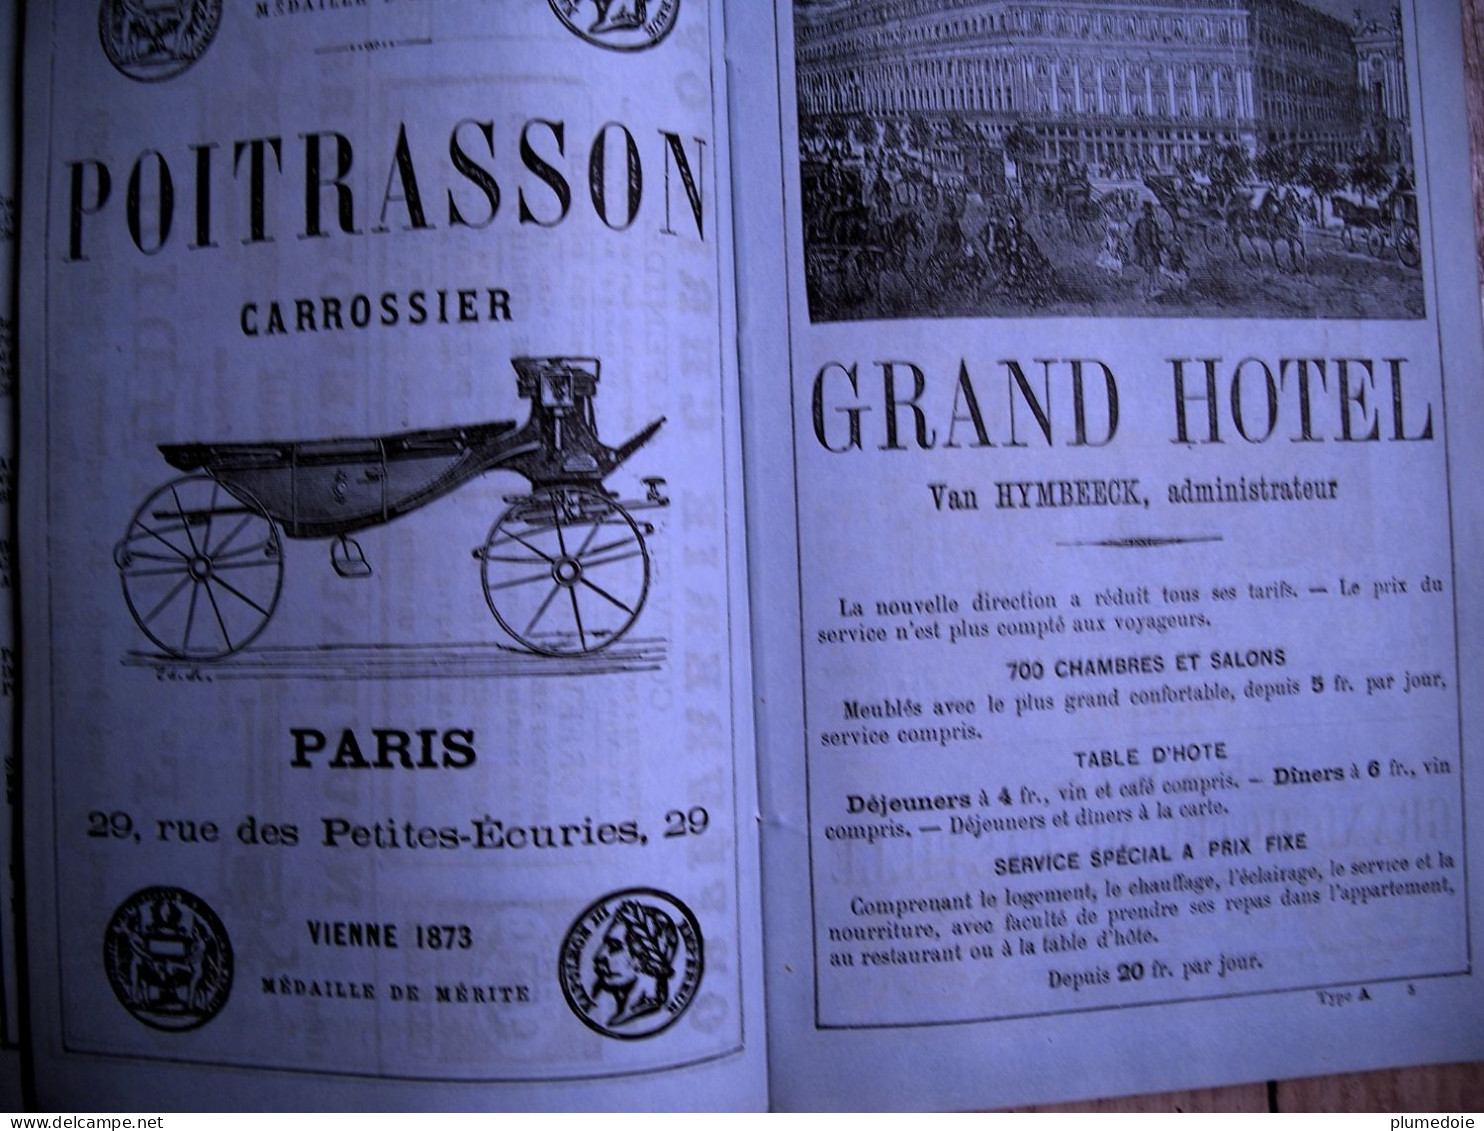 RARE EO  PARIS ILLUSTRE 1870 - 1873 ADOLPHE JOANNE , Plans dépliables , 442 vignettes GUIDE DE L'ETRANGER ET DU PARISIEN